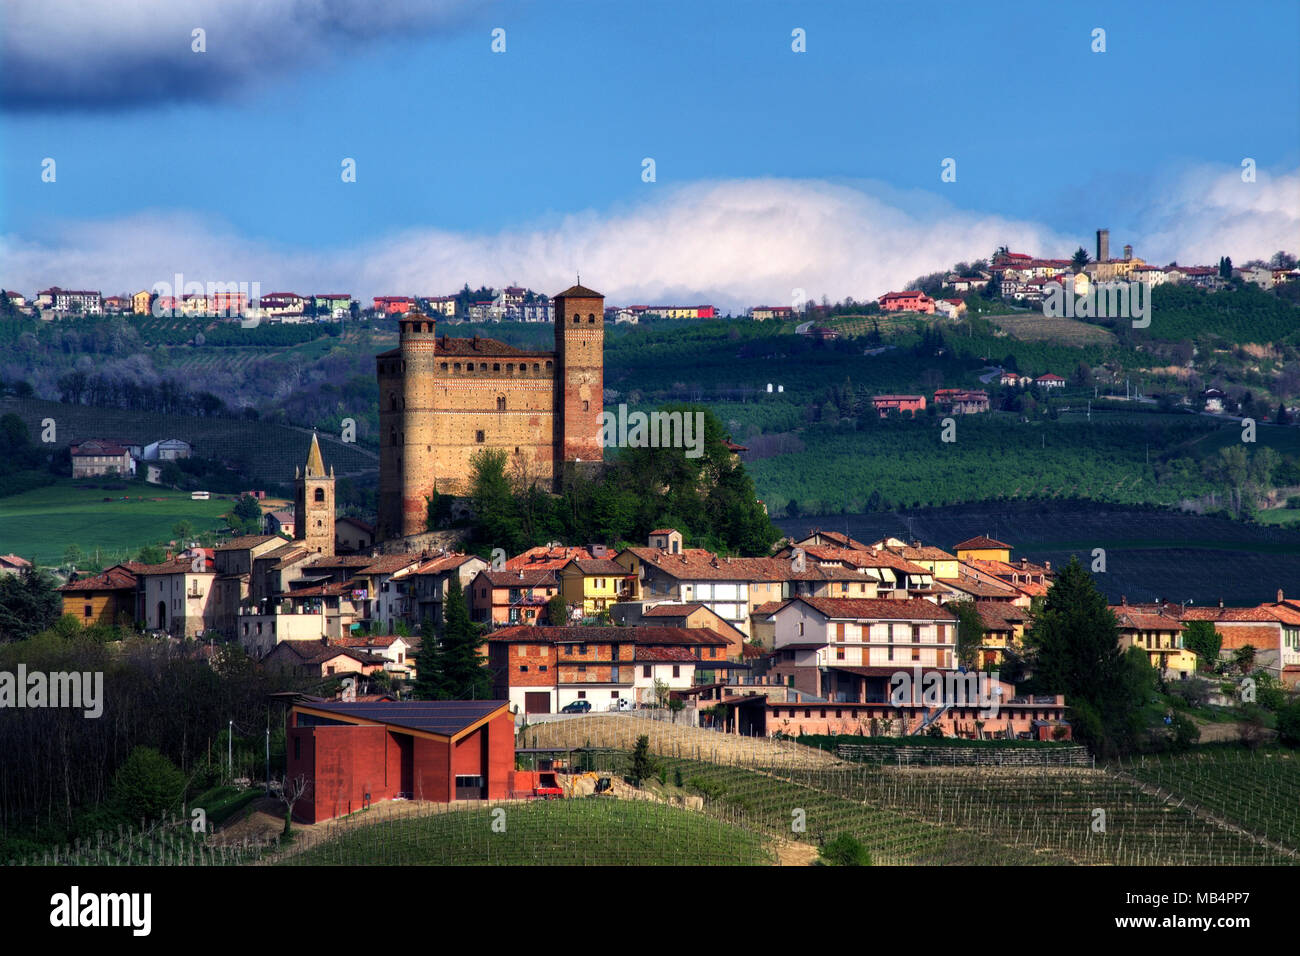 Il castello di Serralunga d'Alba si staglia al di sopra del villaggio. Dietro di lui, oltre quindici chilometri del villaggio di Murazzano con la sua torre medievale Foto Stock